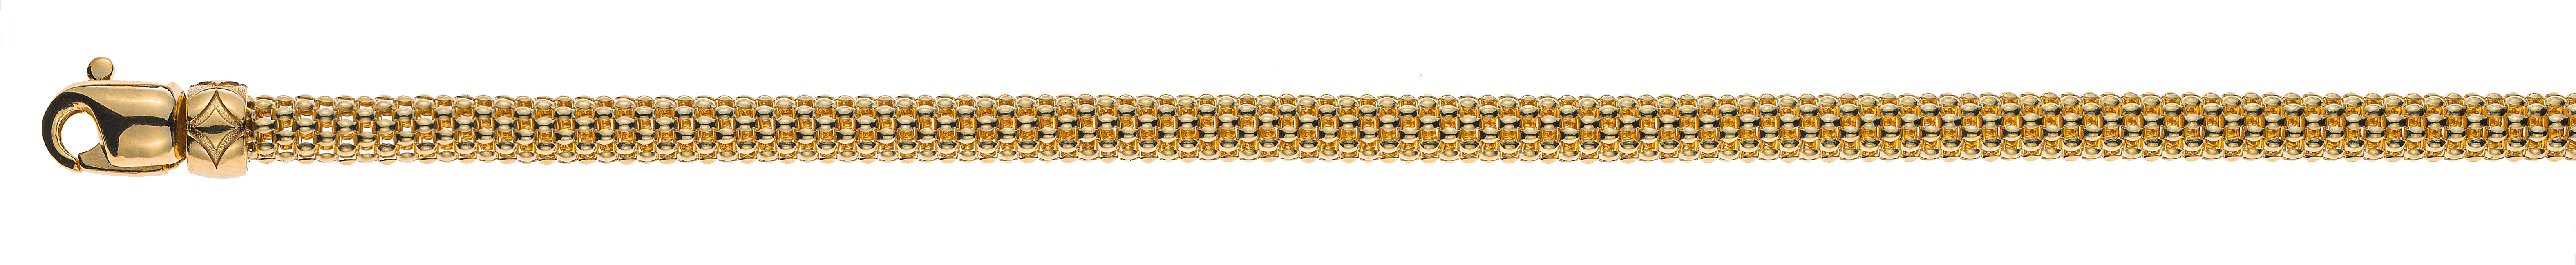 Collier Gelbgold 750 poliert, 45cm, 5mm rundes geflochtenes Profi